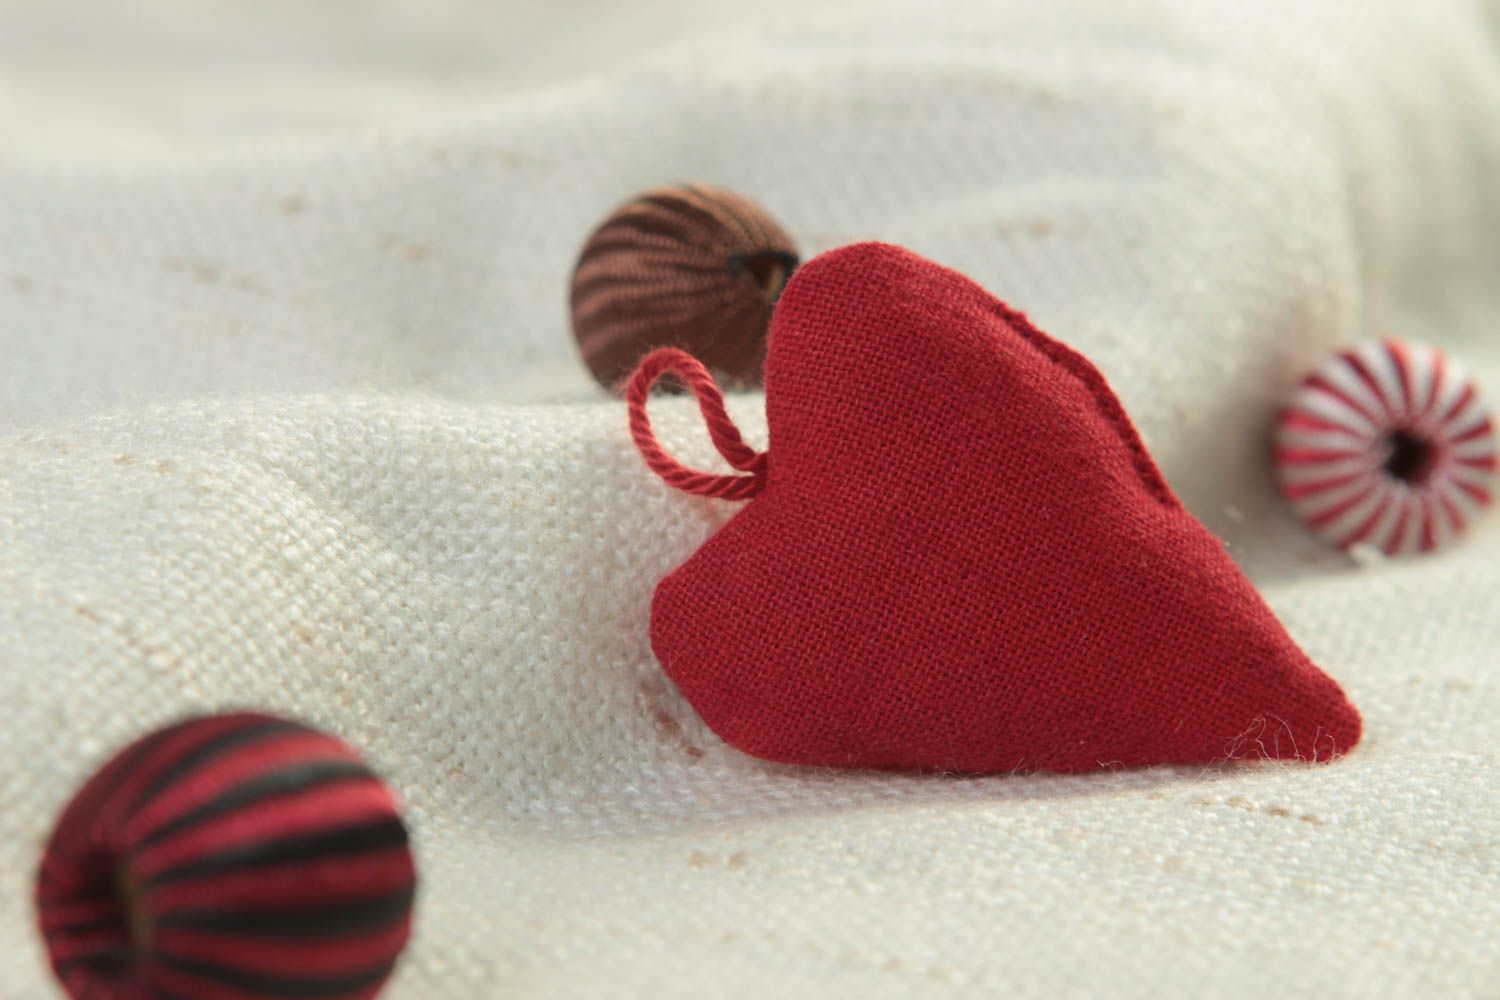 Corazón de peluche hecho a mano juguete para niño elemento decorativo  foto 1